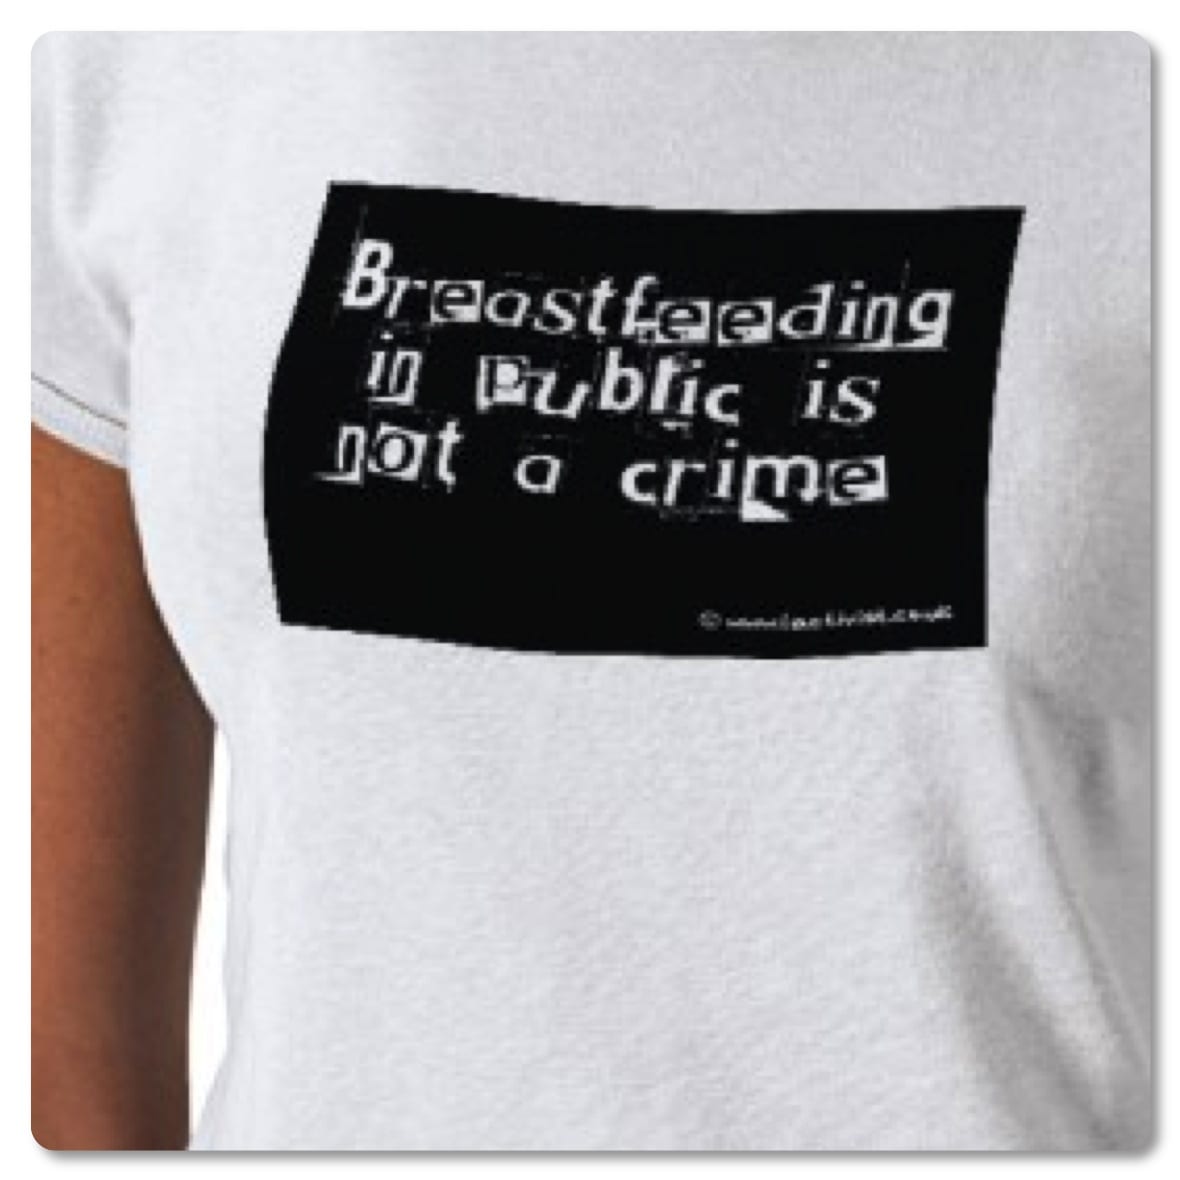 Muslim+women+breastfeeding+in+public